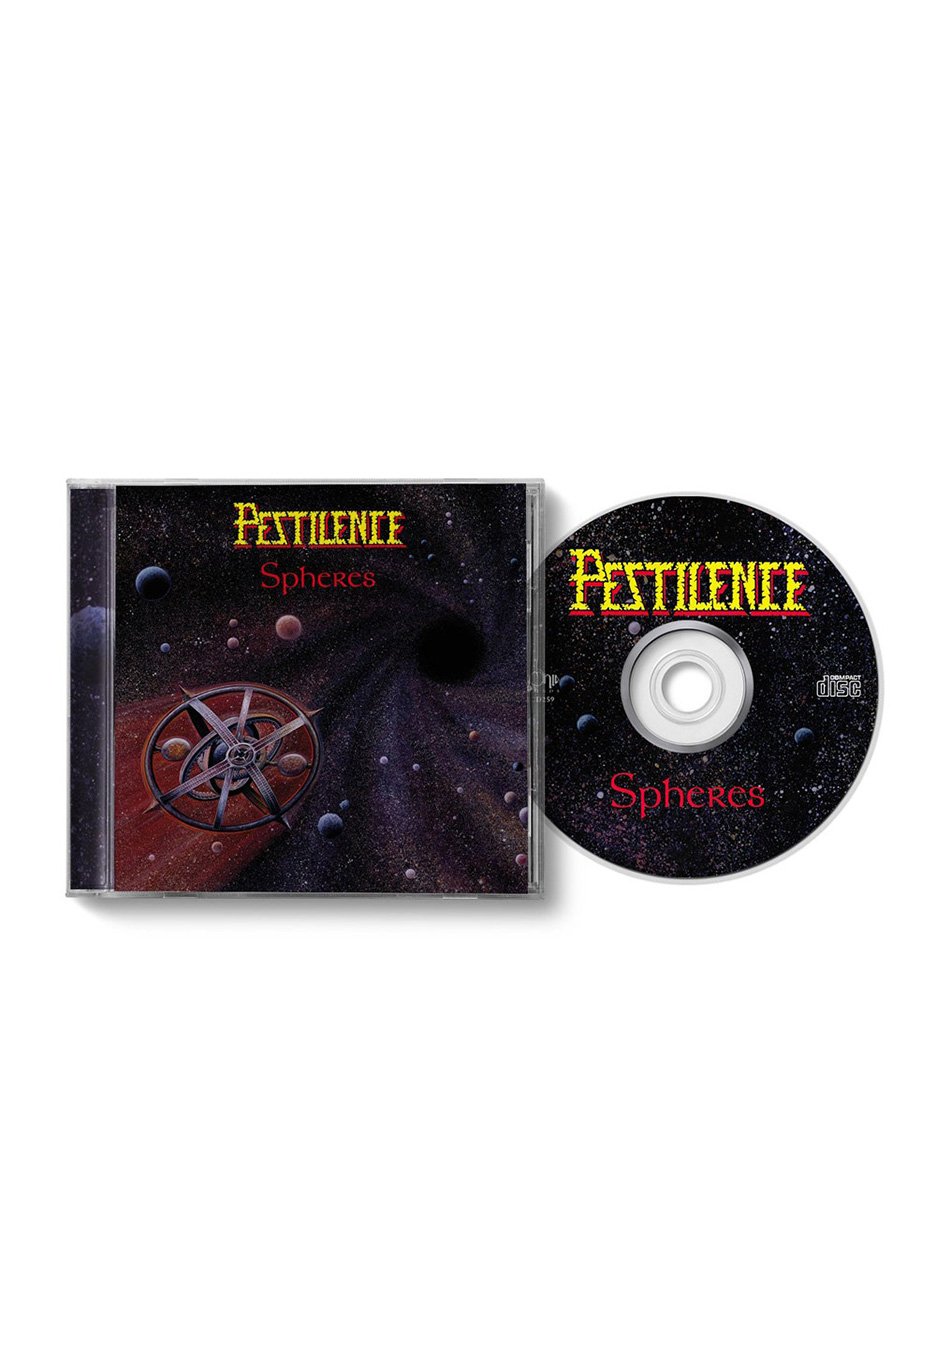 Pestilence - Spheres (Remastered) - CD